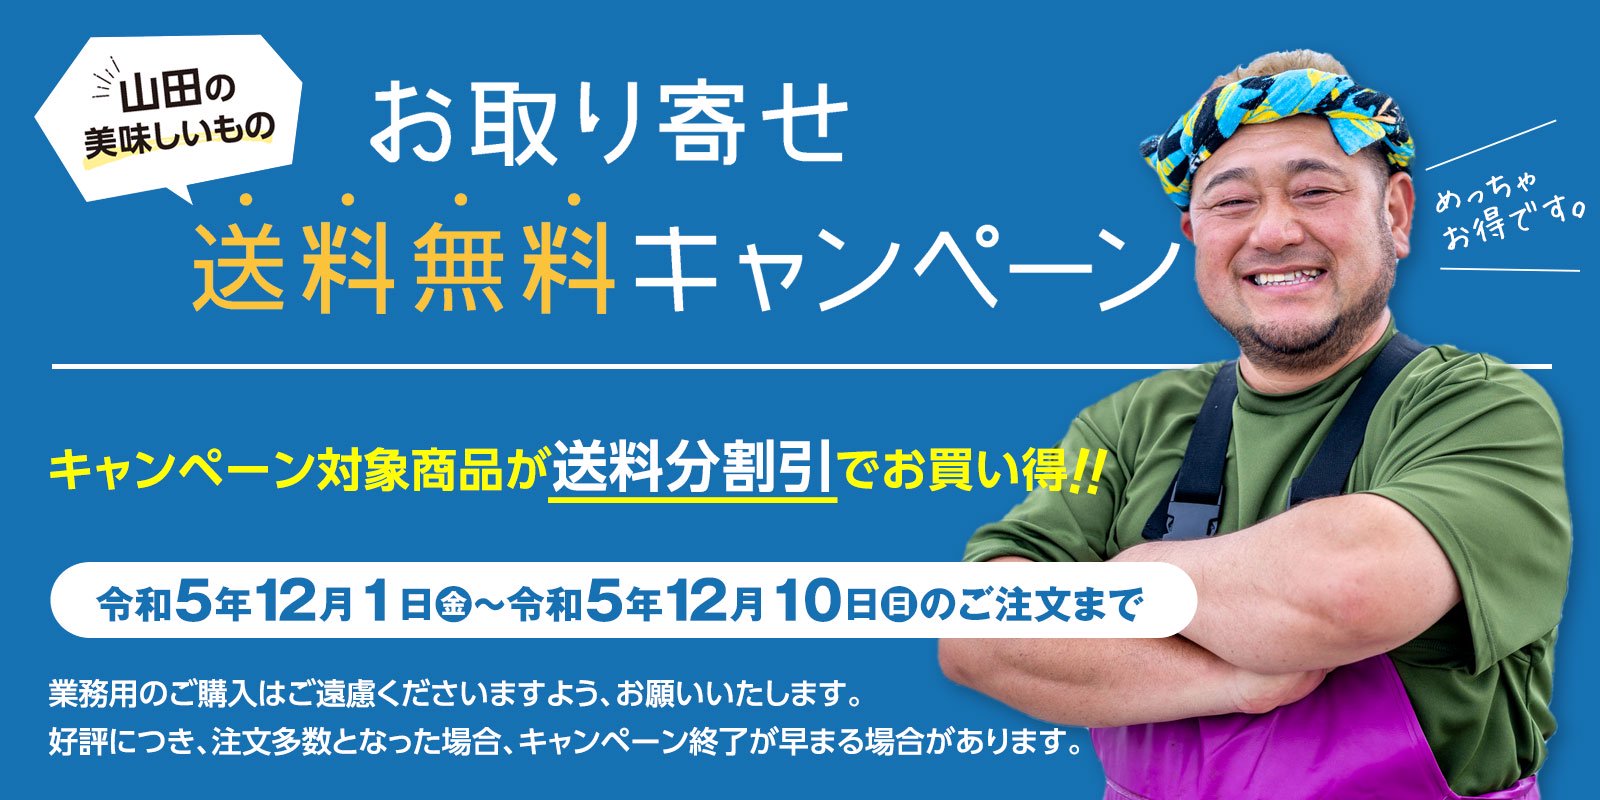 送料無料でお得!! 明神丸かき・ほたてきちは山田の特産品送料無料キャンペーンに参加しています。